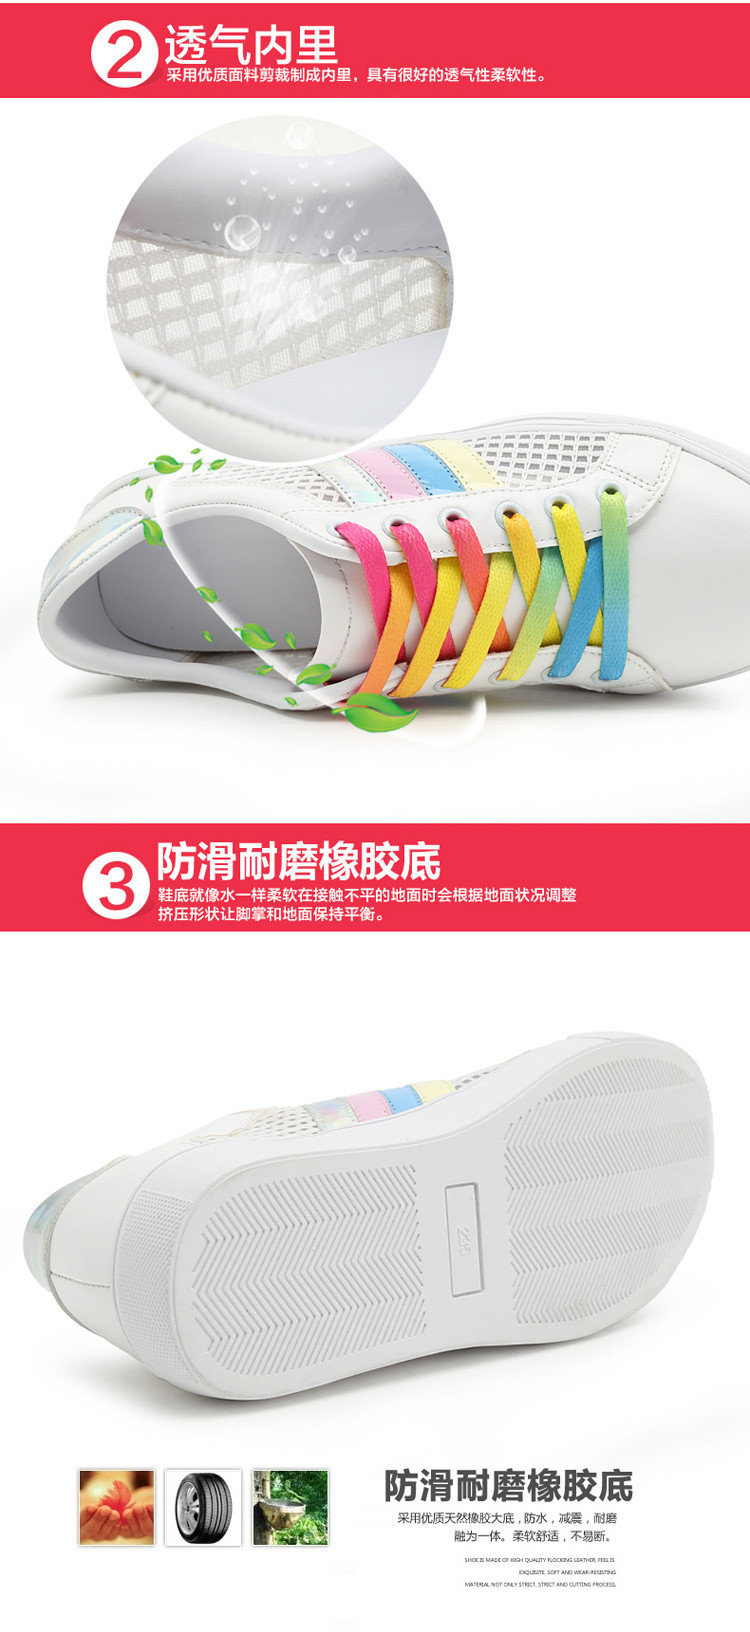 夏季低跟平底韩版彩虹系带镂空透气运动白色板鞋单鞋小白鞋女潮